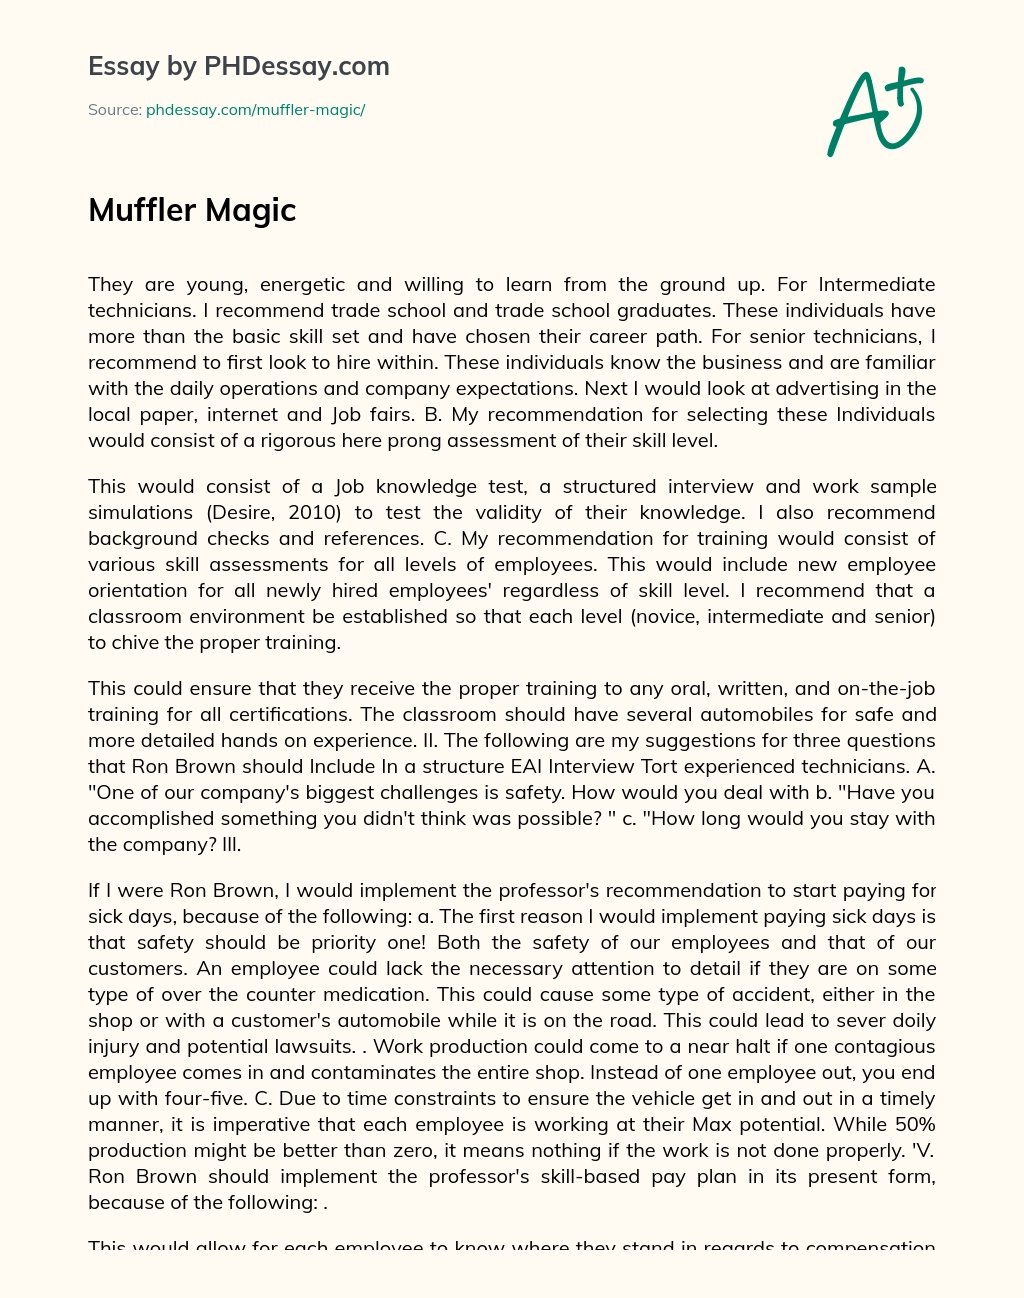 Muffler Magic essay